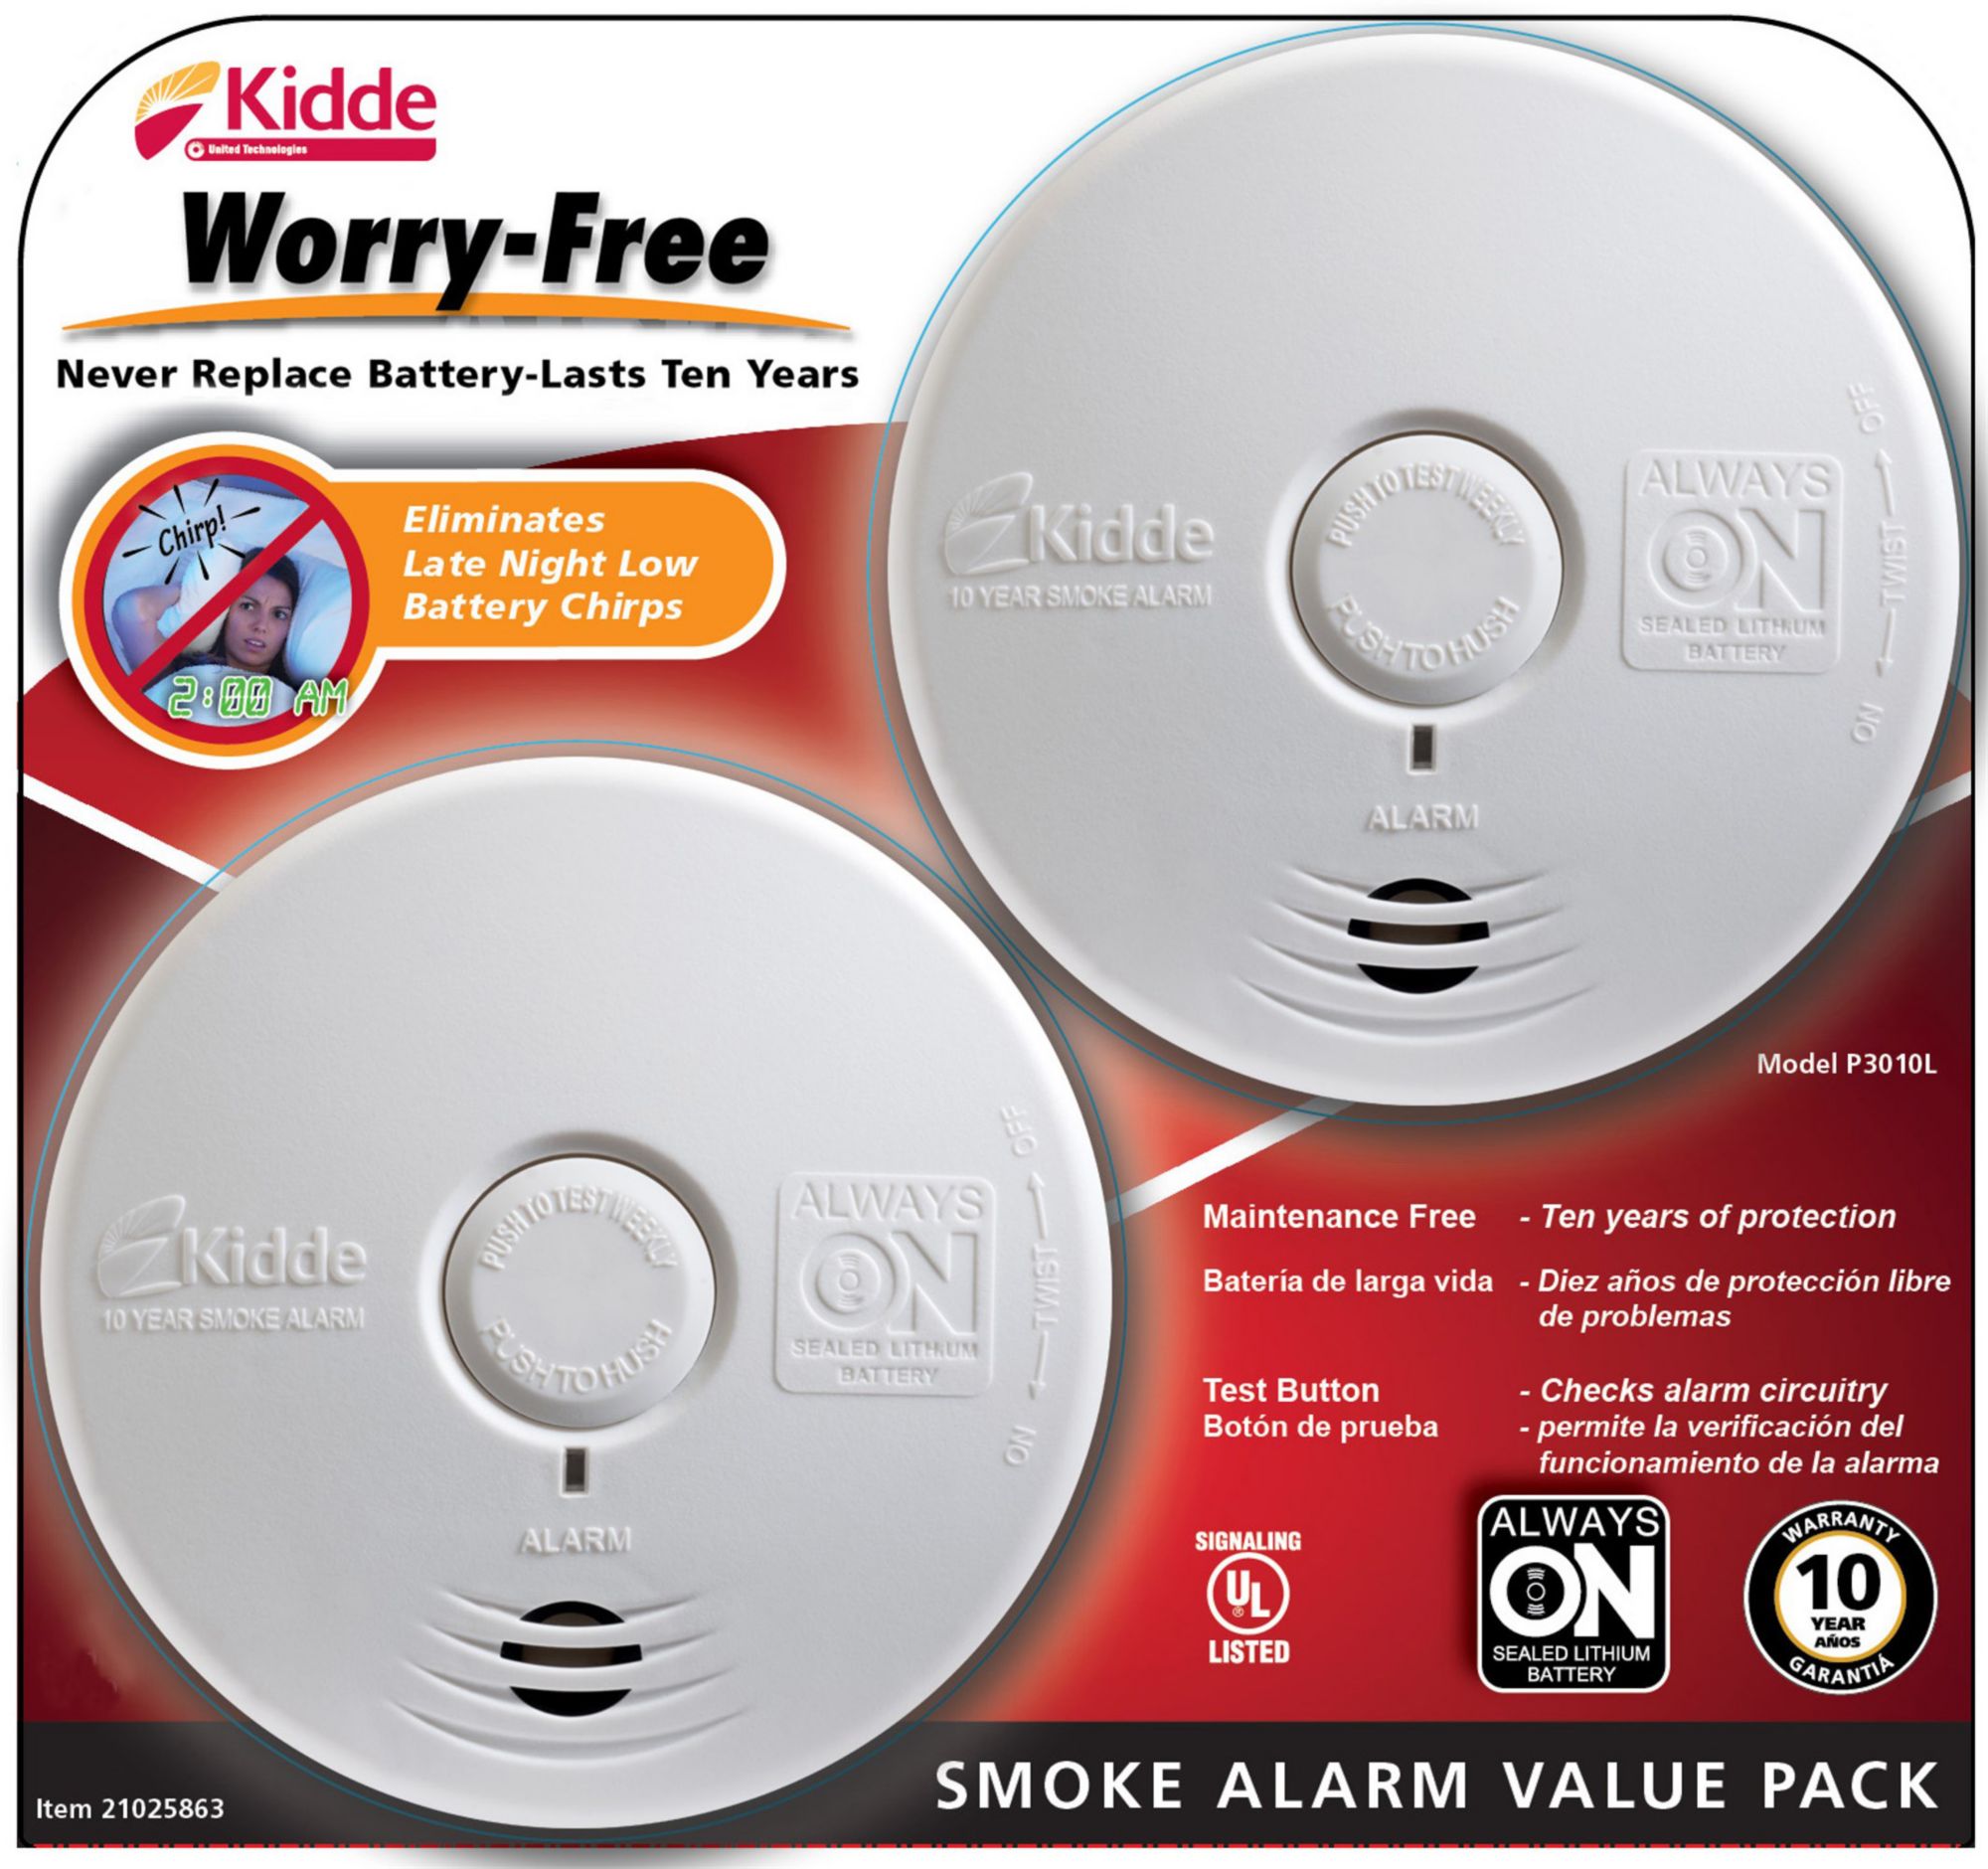 Kidde Worry-Free Smoke Alarms, 2 pk. - White